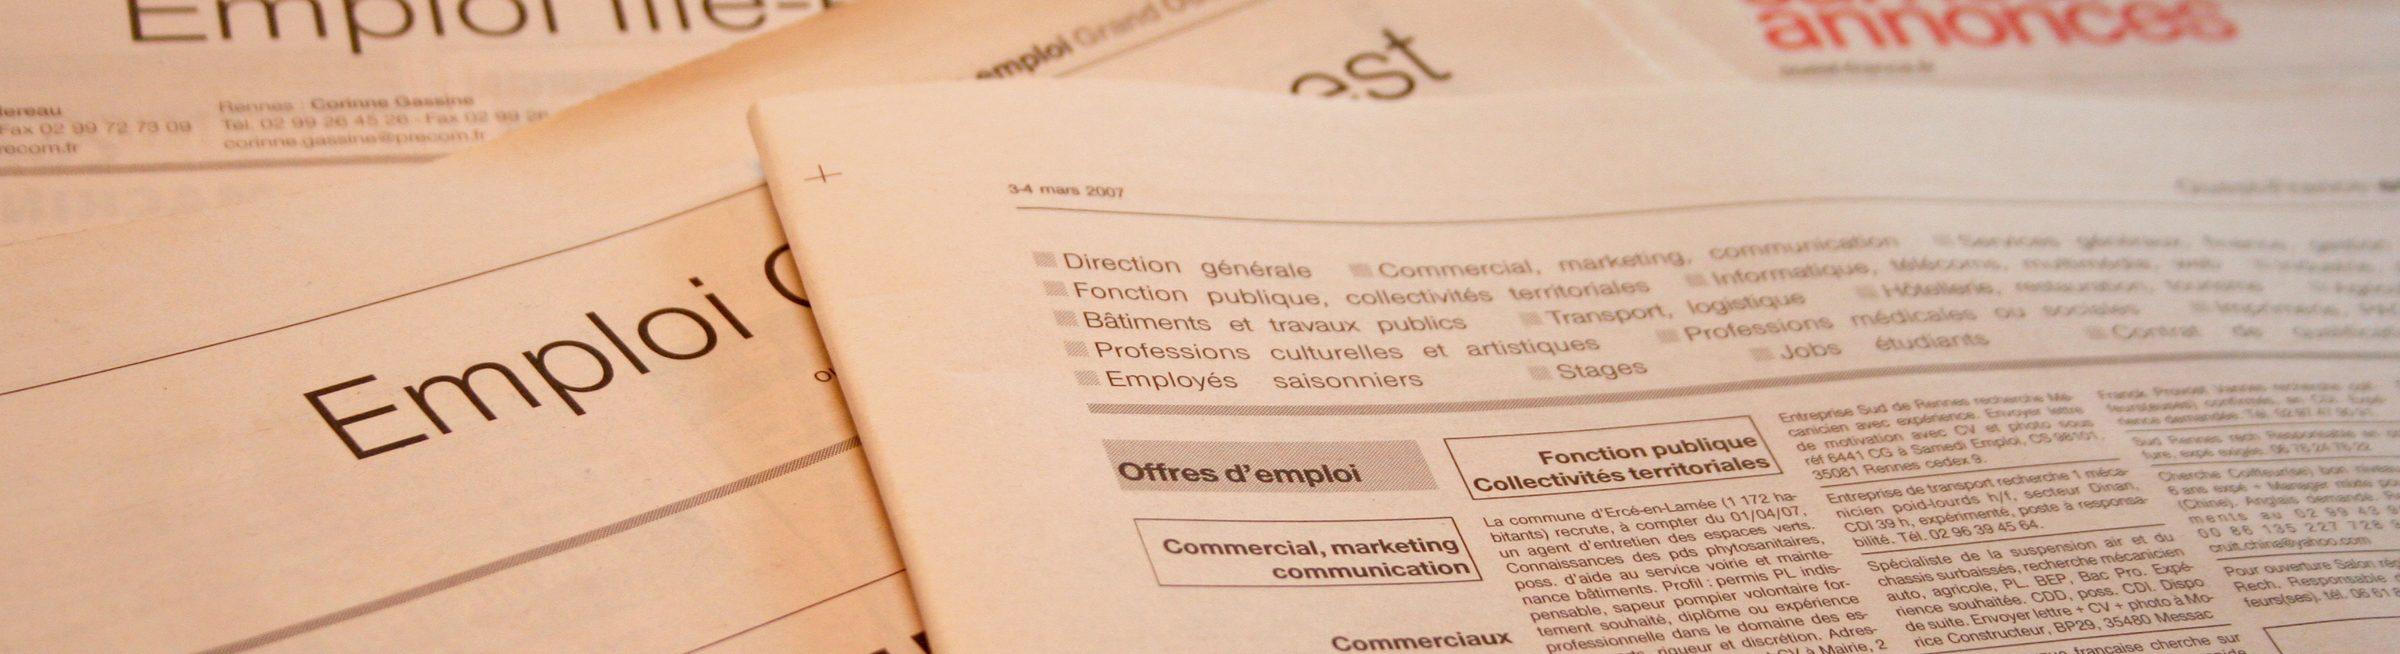 Des offres d'emploi dans des journaux d’île de France